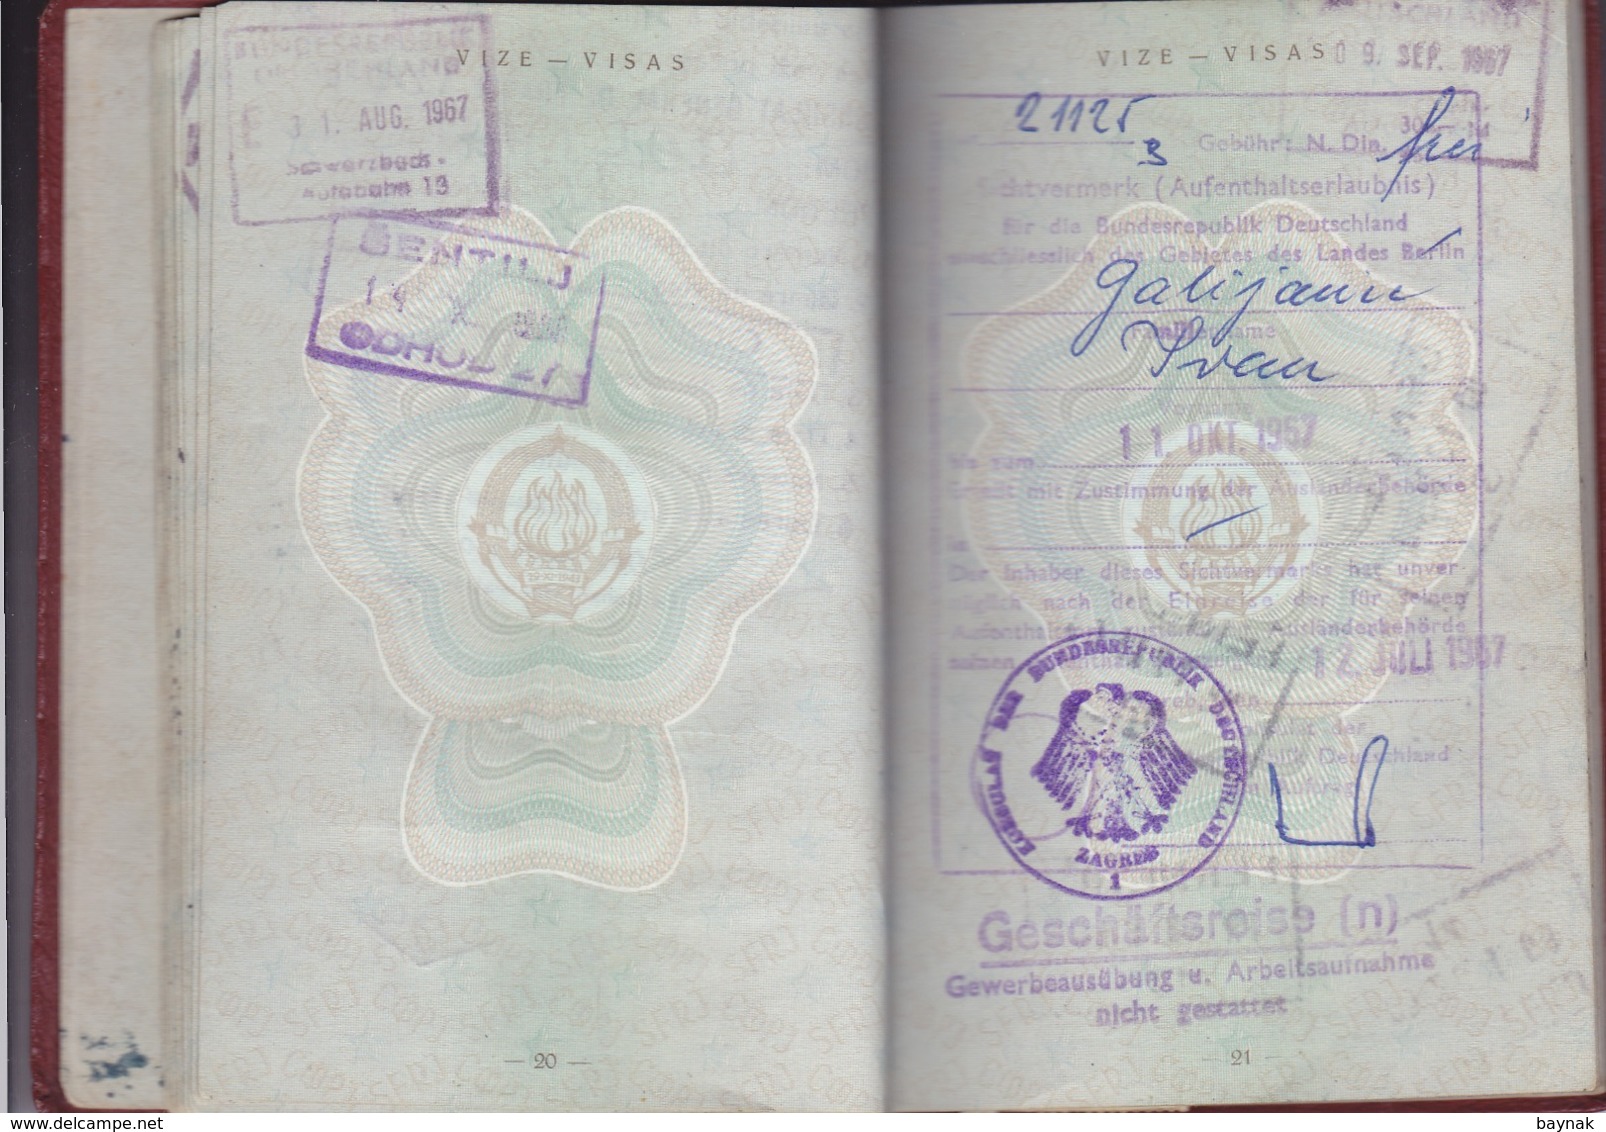 PM42  -  SFR YUGOSLAVIA  -  PASSPORT -  MAN  - 1966 -  FULL WITH VISA AND TAX STAMP FRANCE, DEUTSCHLAND - GESCHAFTSREISE